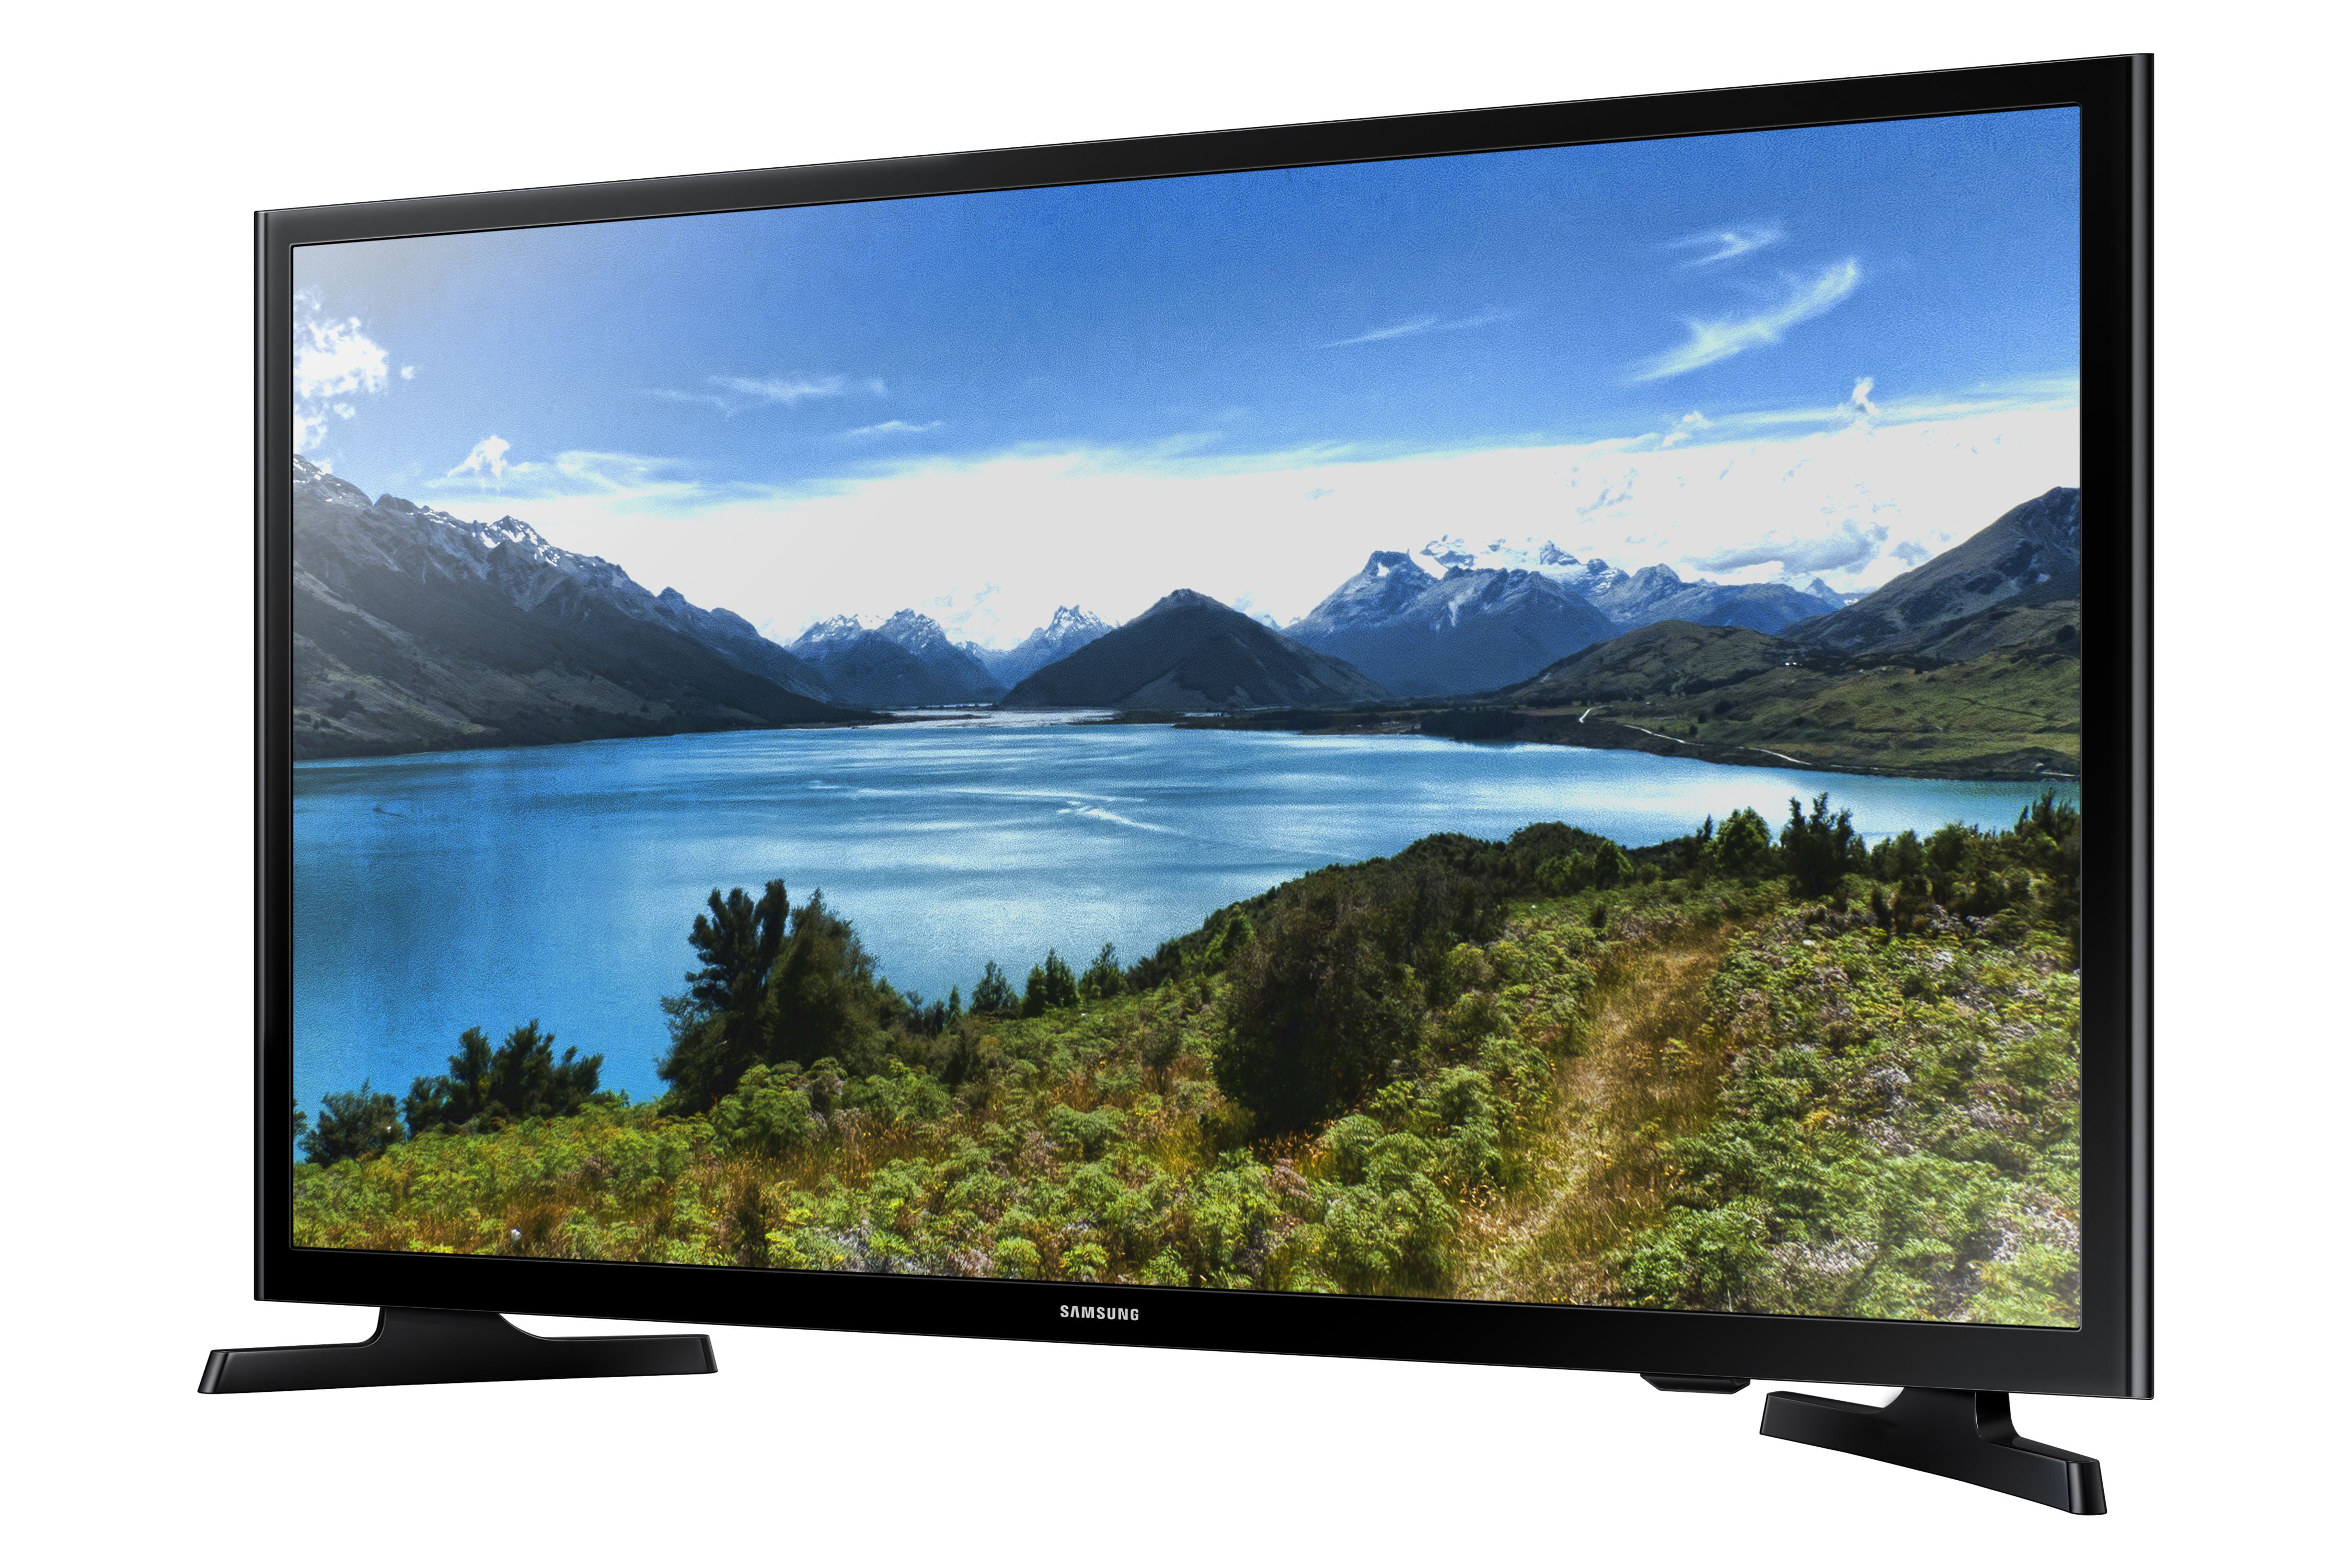 SAMSUNG HD (720P) LED TV UN32J4000 - Walmart.com